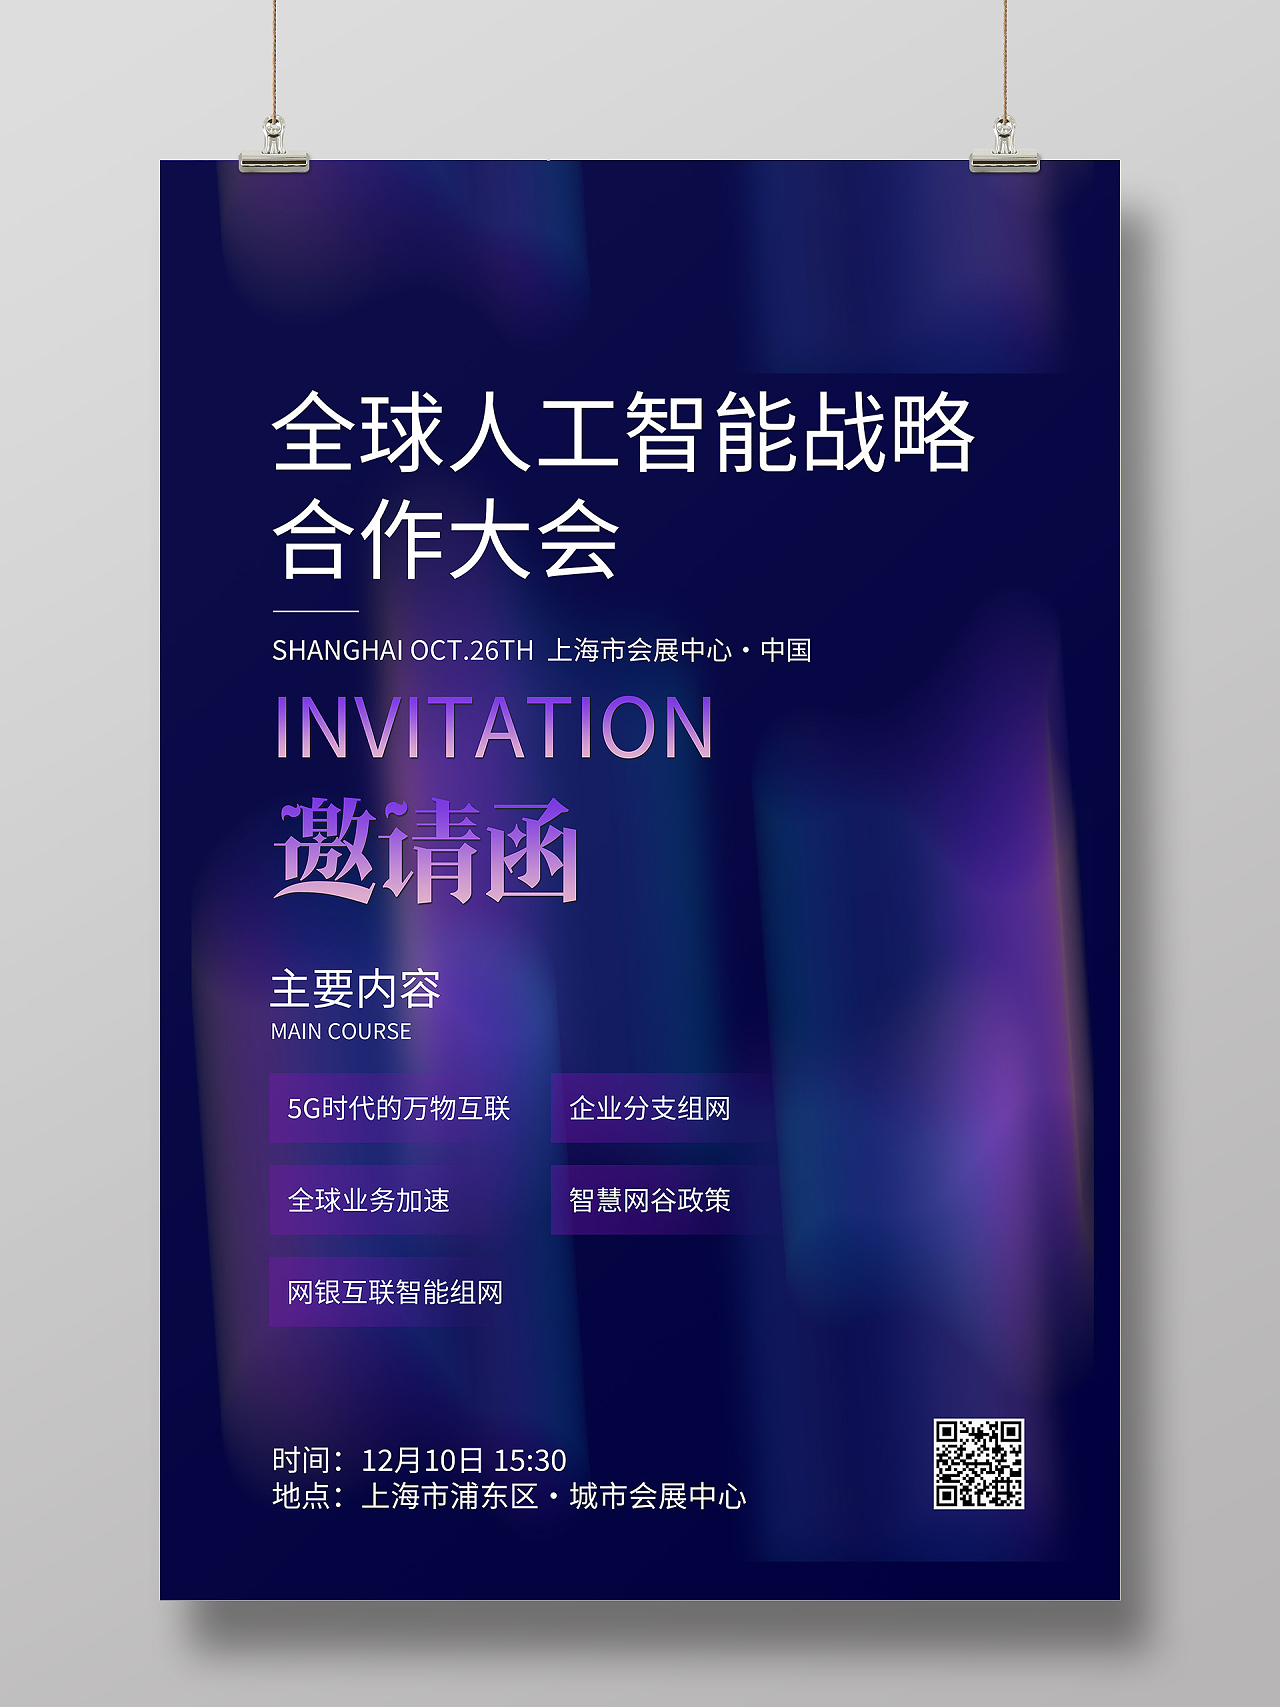 紫色创意全球人工智能战略合作大会科技会议邀请函紫色渐变海报